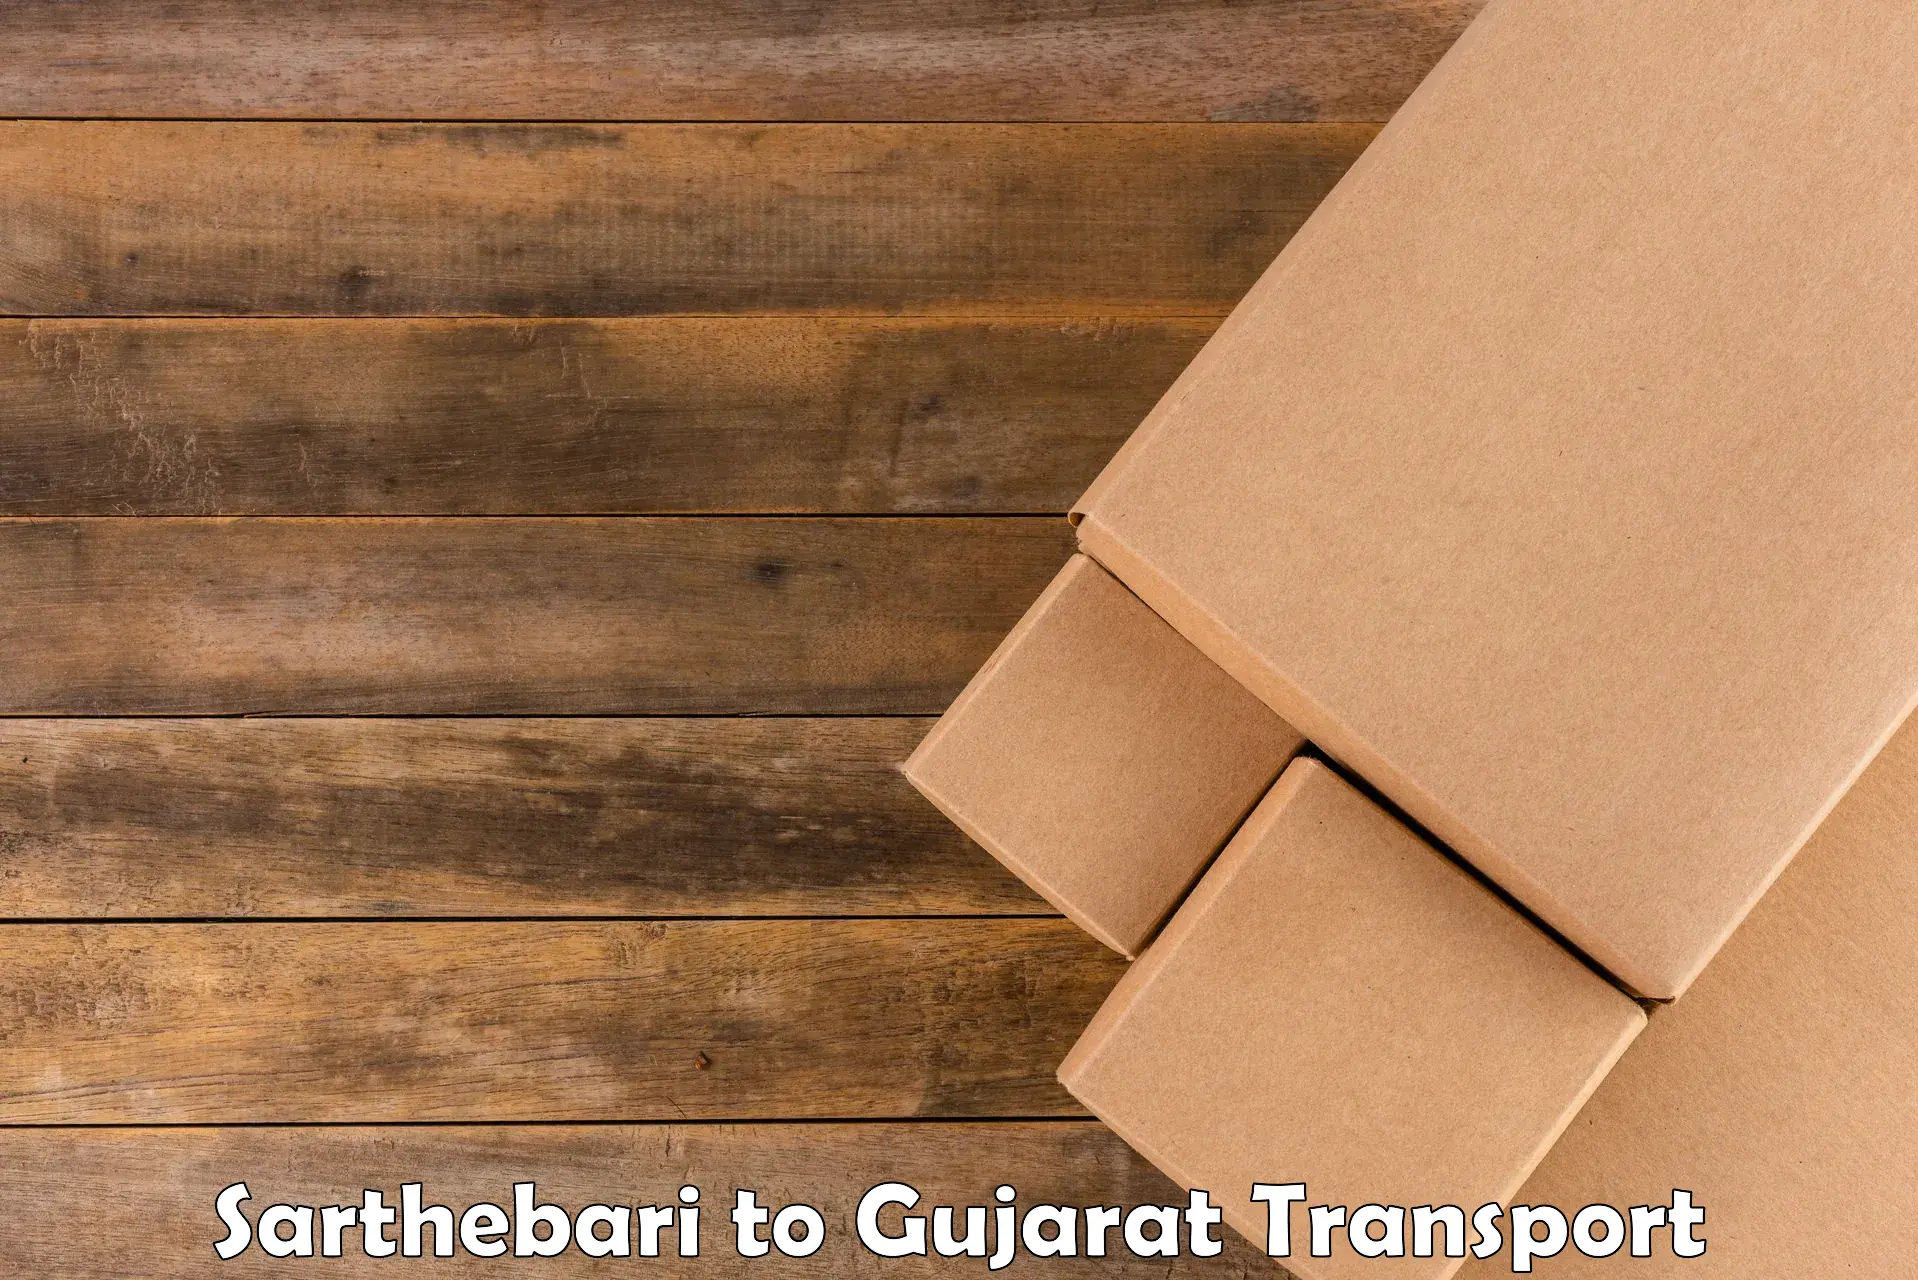 Express transport services in Sarthebari to Narmada Gujarat